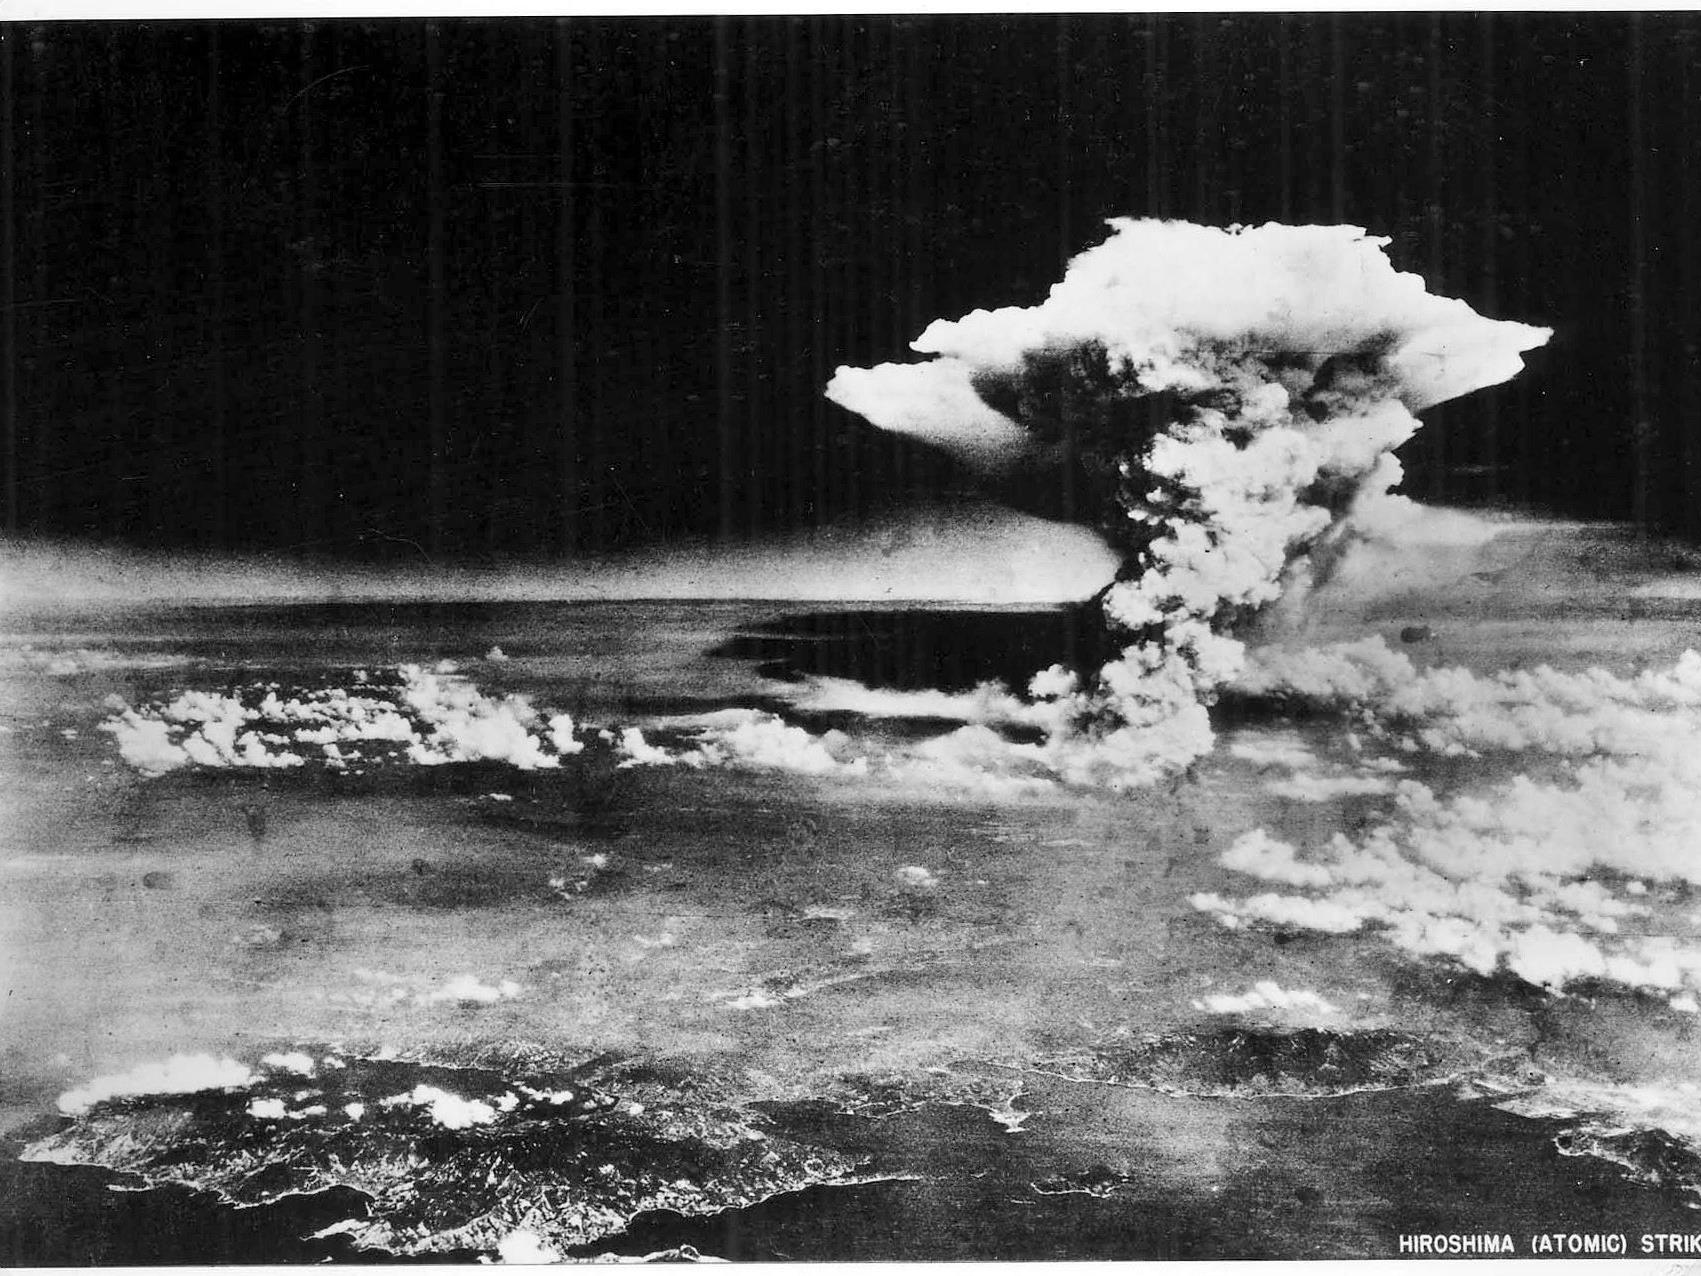 Im Dezember 1938 entdeckte Otto Hahn die Kernspaltung, im Juli 1945 explodierte die erste Atombombe.